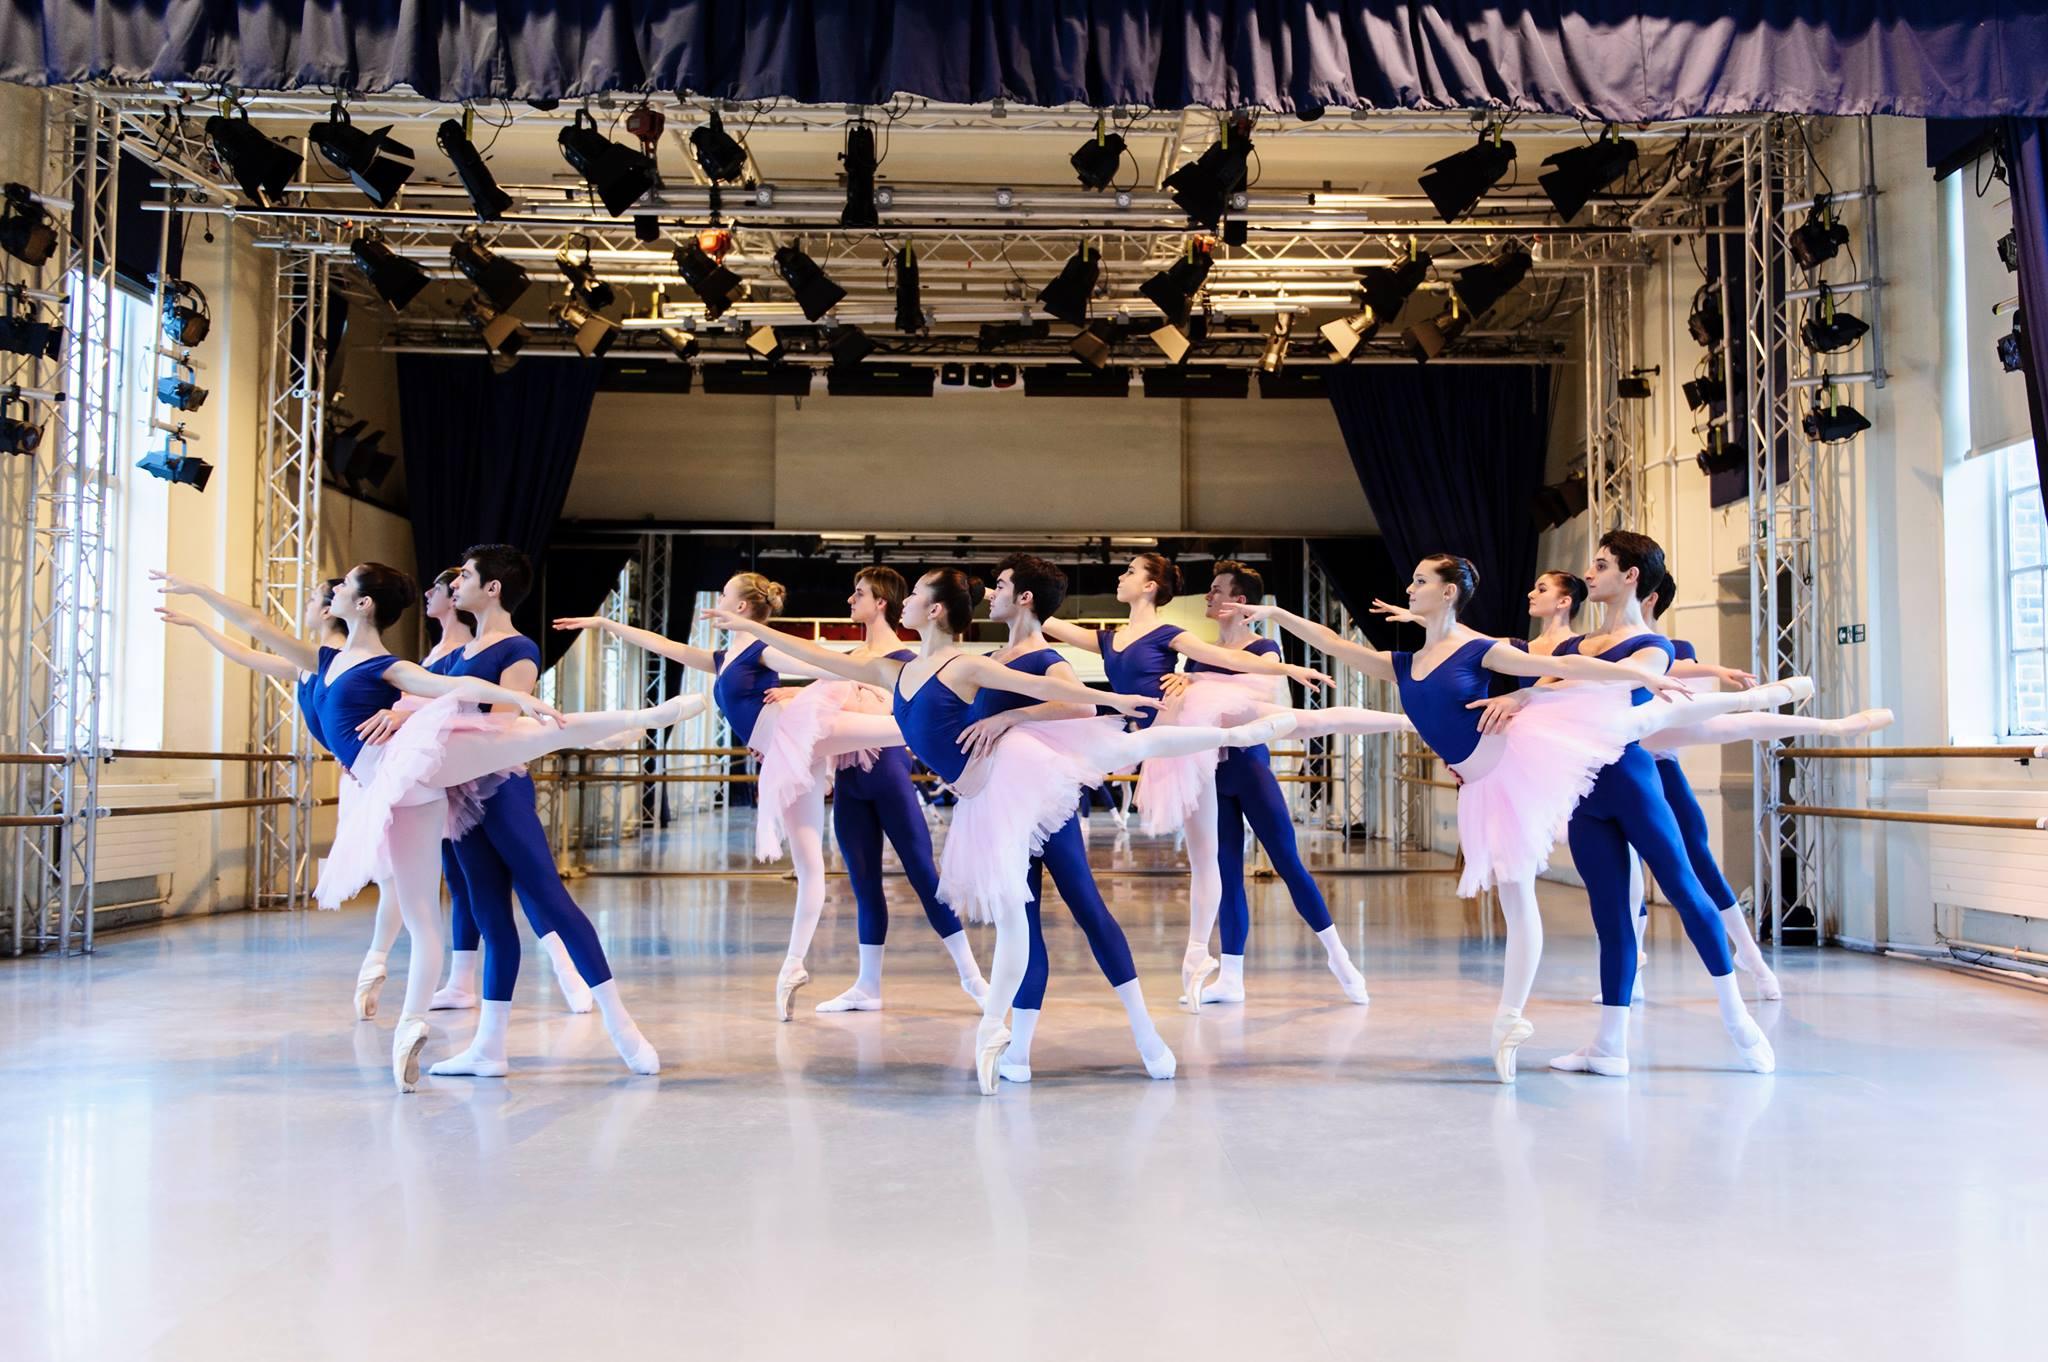 Retransmisión online desde la escuela del English National Ballet. Jueves 28